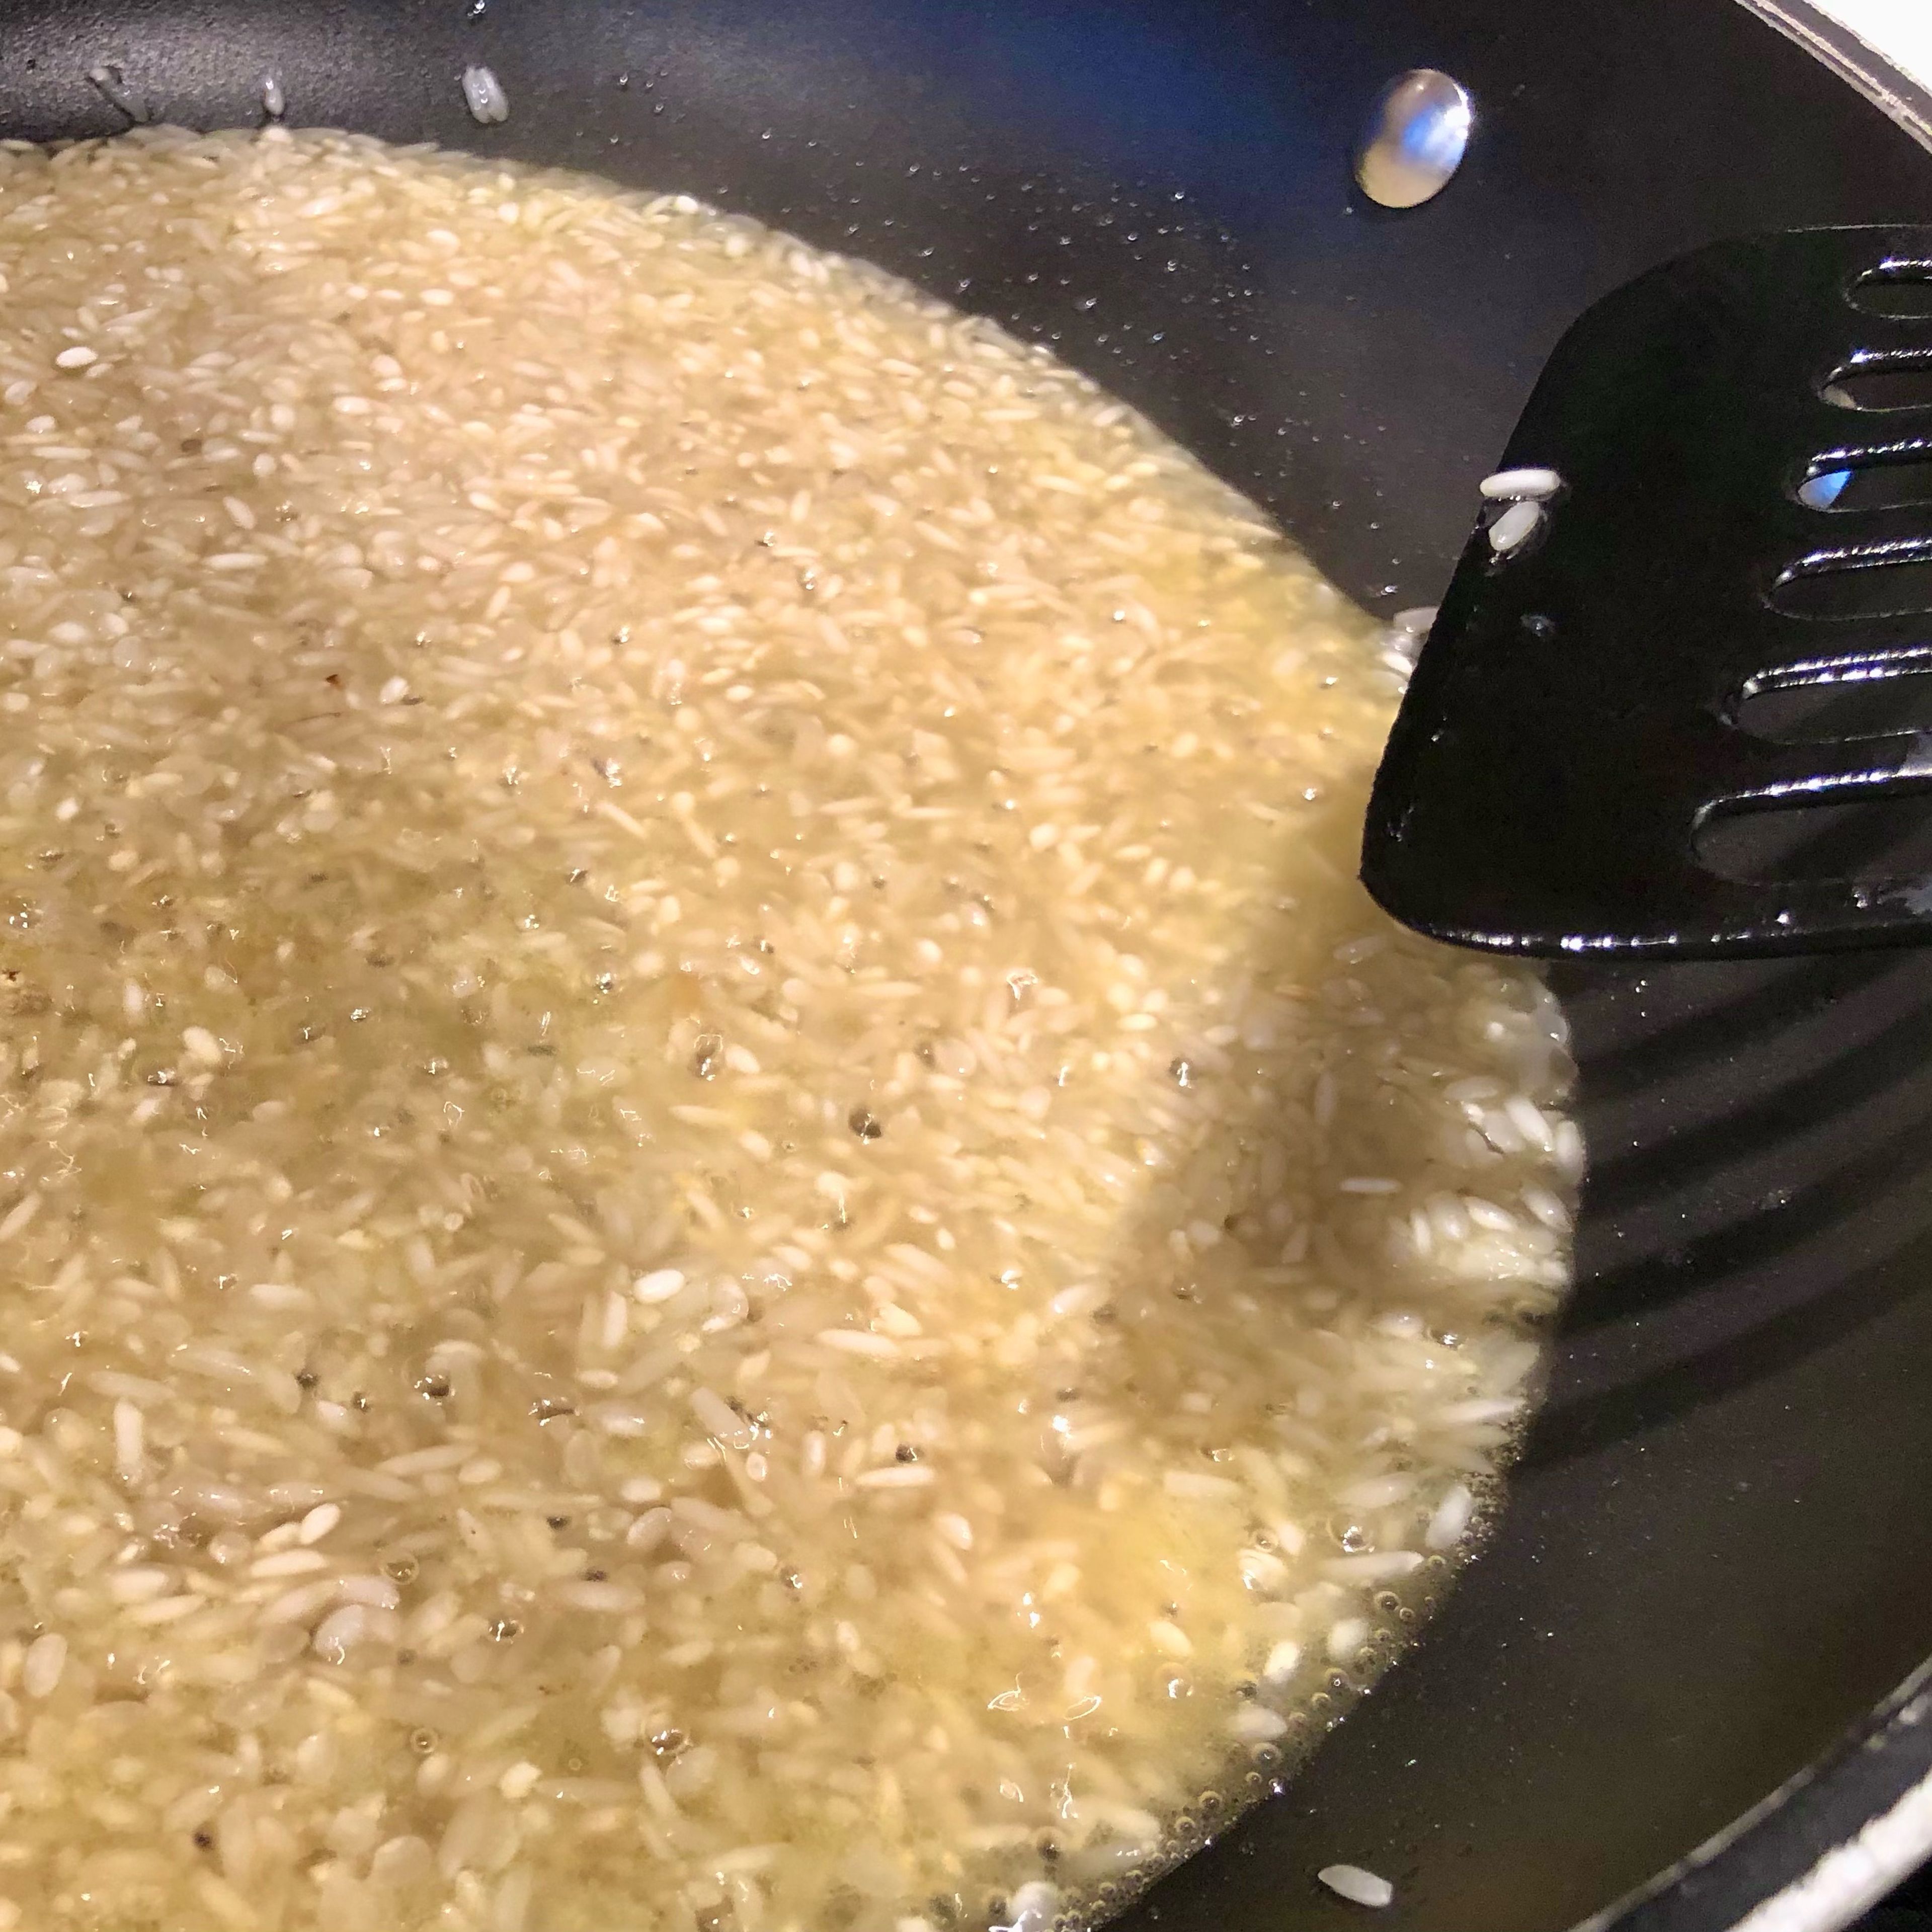 In einer weiten Pfanne Butter(schmalz) zerlassen, den (ungewaschenen) Risottoreis zugeben und etwa eine Minute anbraten, dabei rühren bzw. wenden. Mit dem Weißwein ablöschen und etwa 1 TL Salz zugeben - die Salzmenge auf die Salzigkeit der Brühe abstimmen! Wenn der Wein verkocht ist, wieder rühren und einen ersten Teil der Brühe angießen, etwa so viel, dass der Reis gerade so bedeckt ist. Dabei ist die Temperatur eher hoch, so dass es in der Pfanne immer siedet bis blubbert.